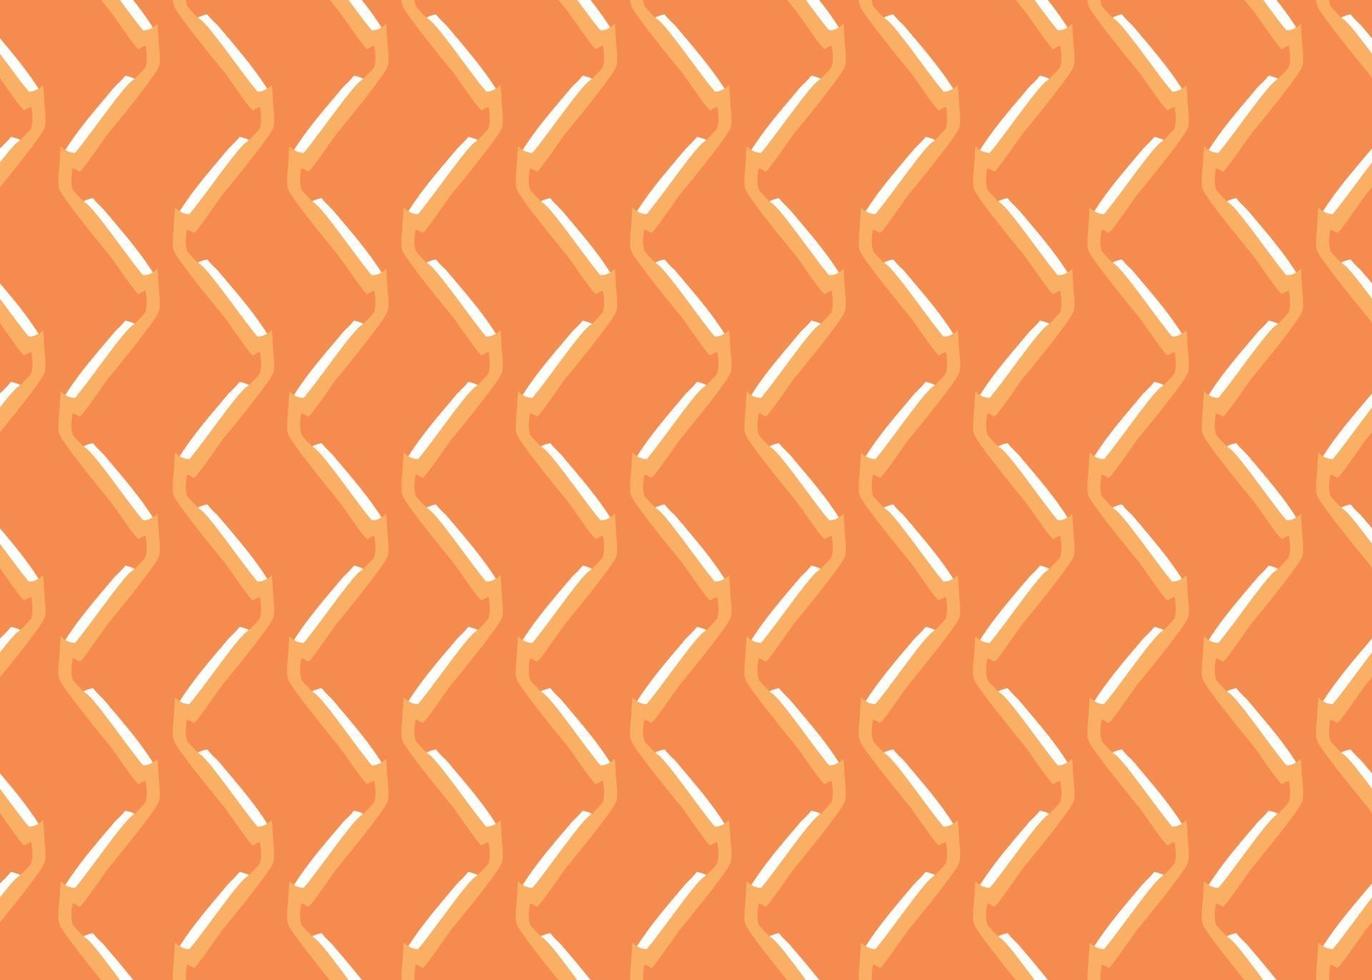 Vektor Textur Hintergrund, nahtloses Muster. handgezeichnete, orange, weiße Farben.